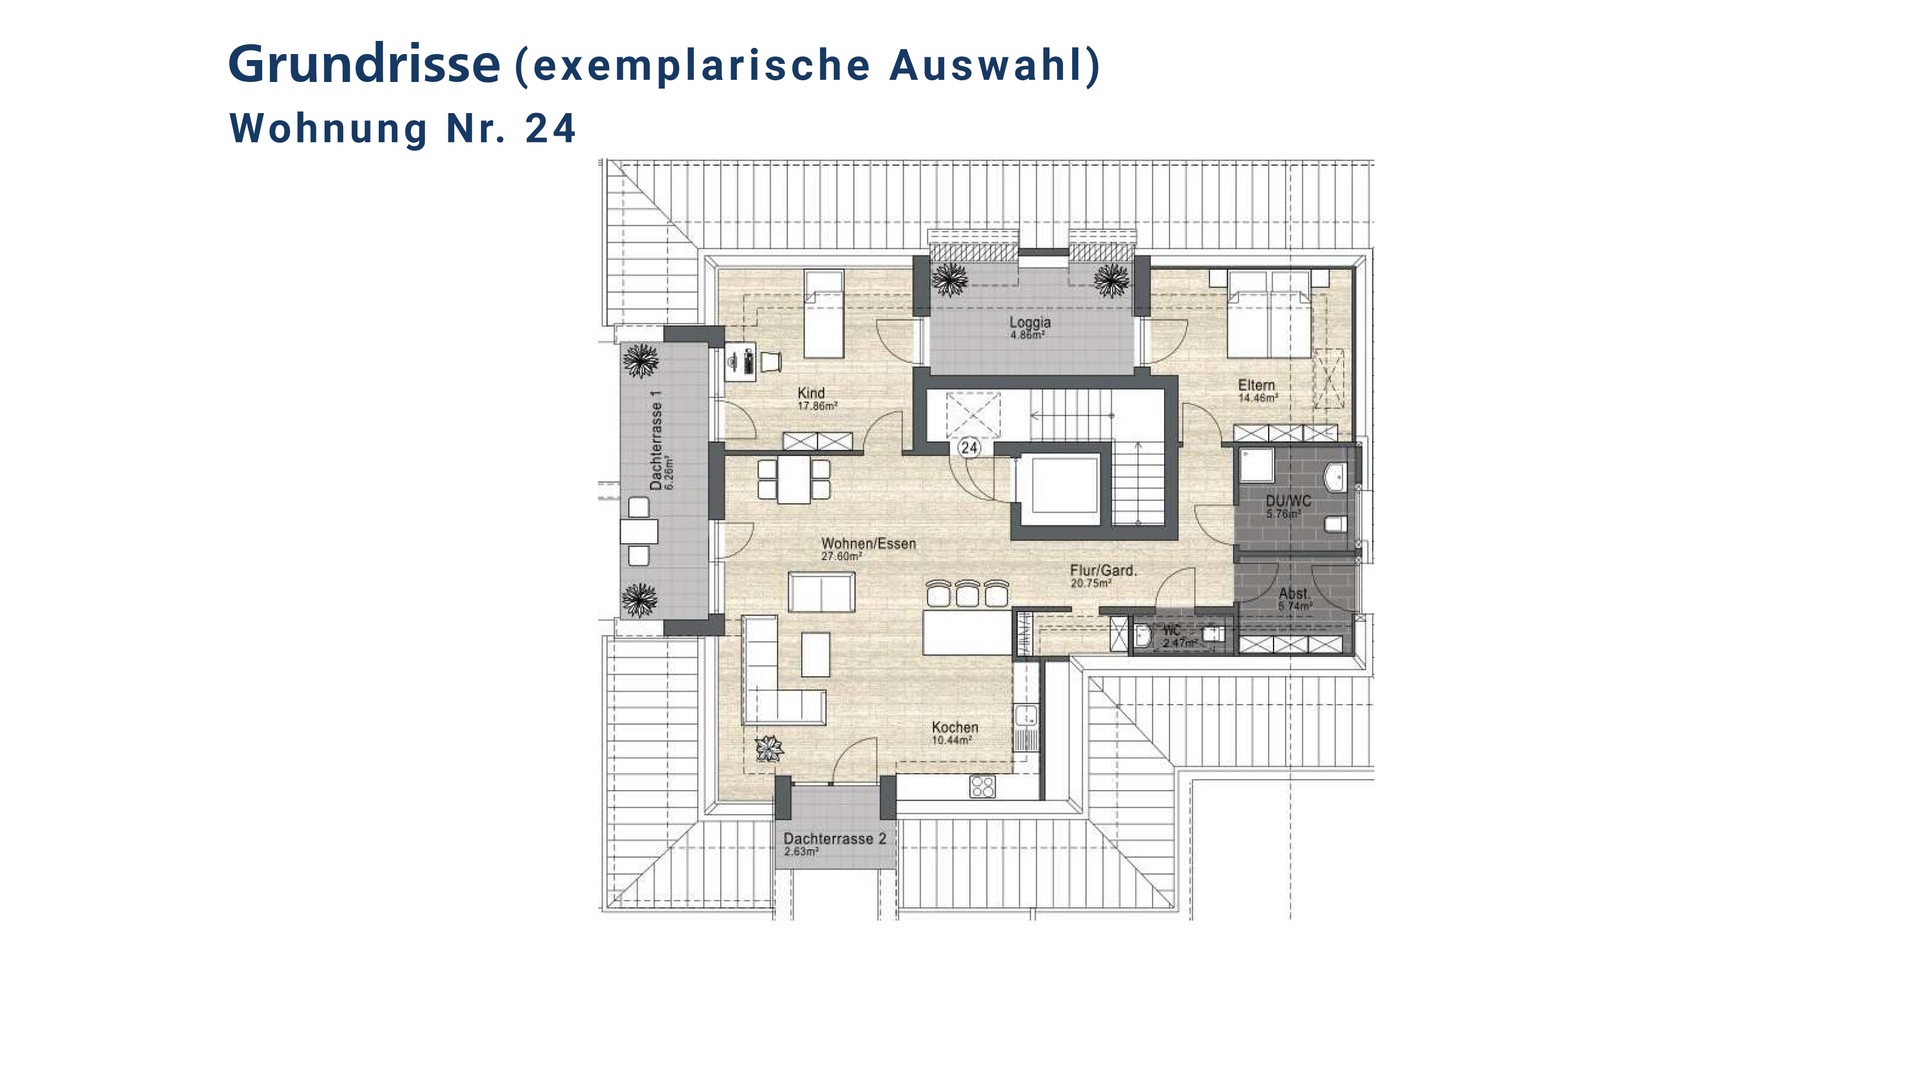 WE-26_Siegburg_Wohnung-kaufen_VR-Immobilien_Bonn-Rhein-Sieg.jpg
				